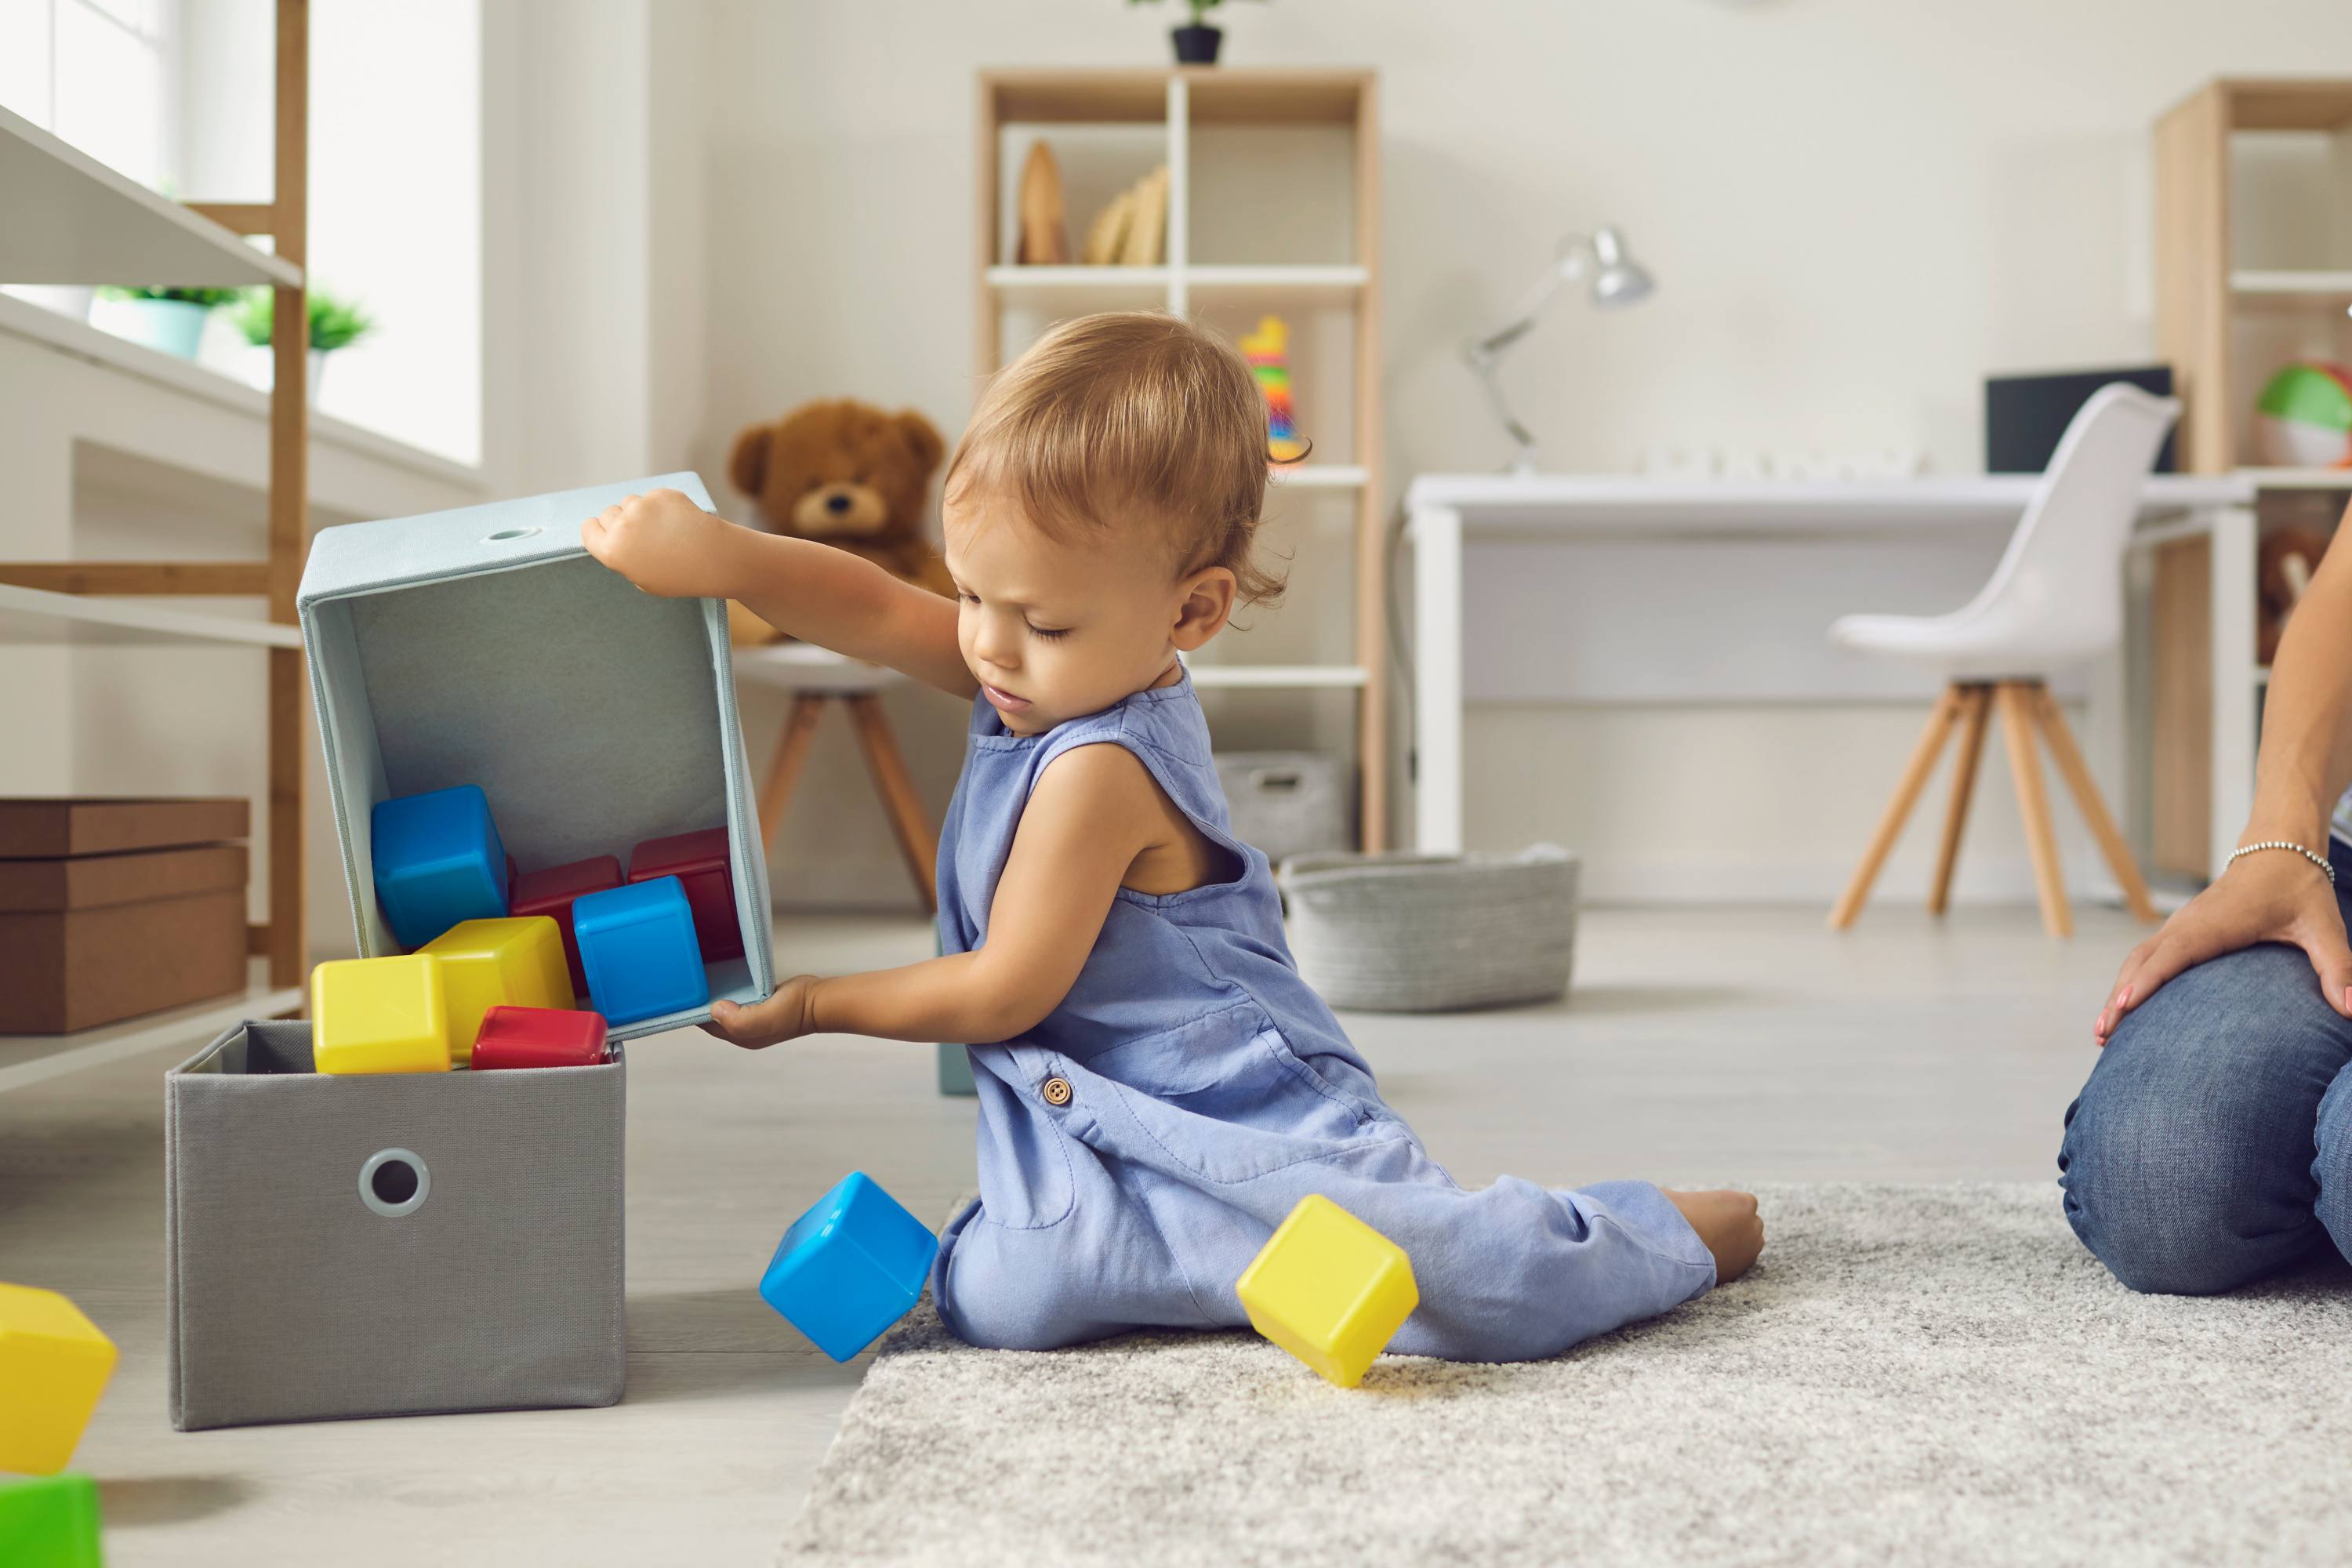 Comment nettoyer les jouets pour bébés - Pause santé